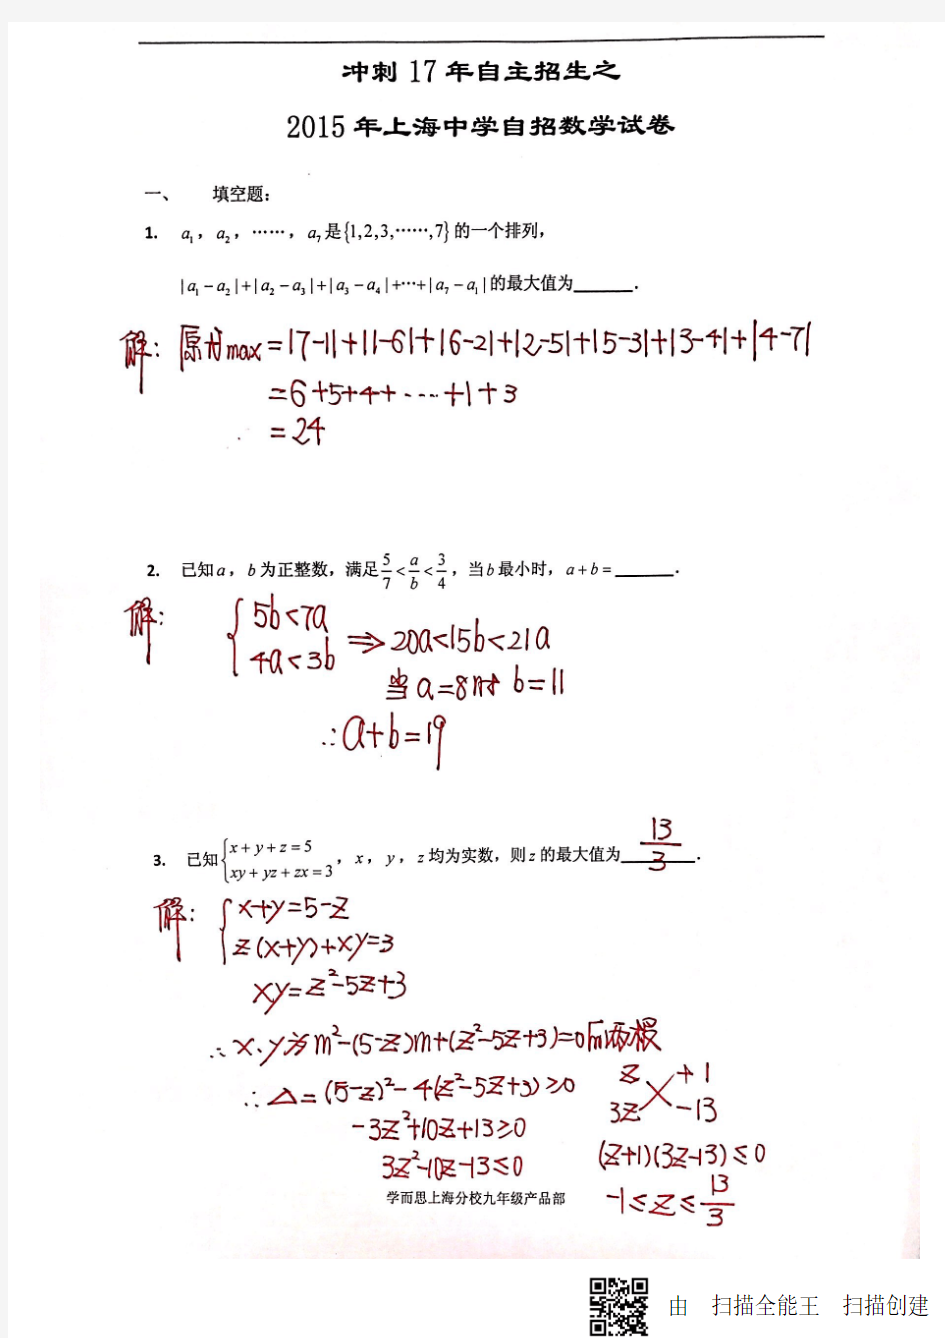 2015 年上海中学自招数学试卷(答案).pd